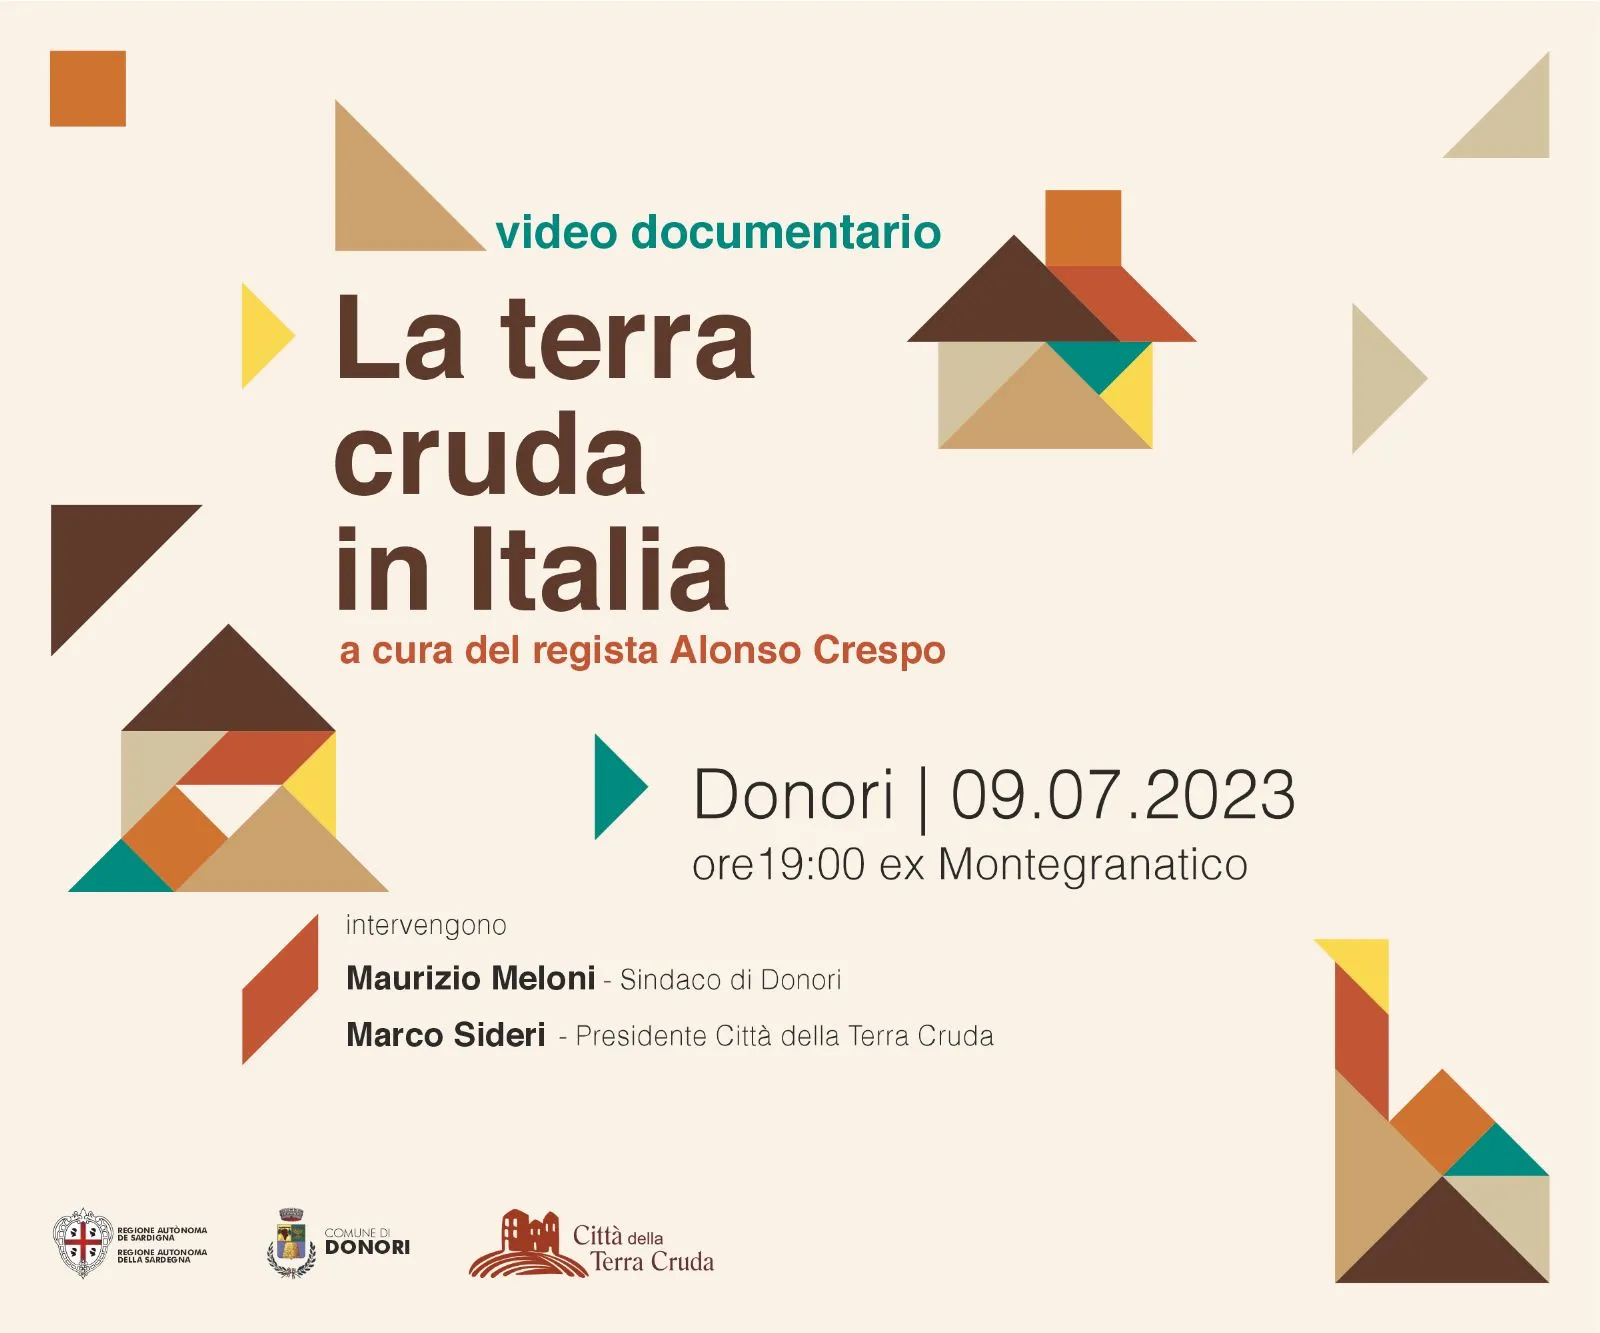 Domenica 9 Luglio 2023 alle ore 19:00 nei locali ex Montegranatico verrà proiettato il video documentario "La terra cruda in Italia"